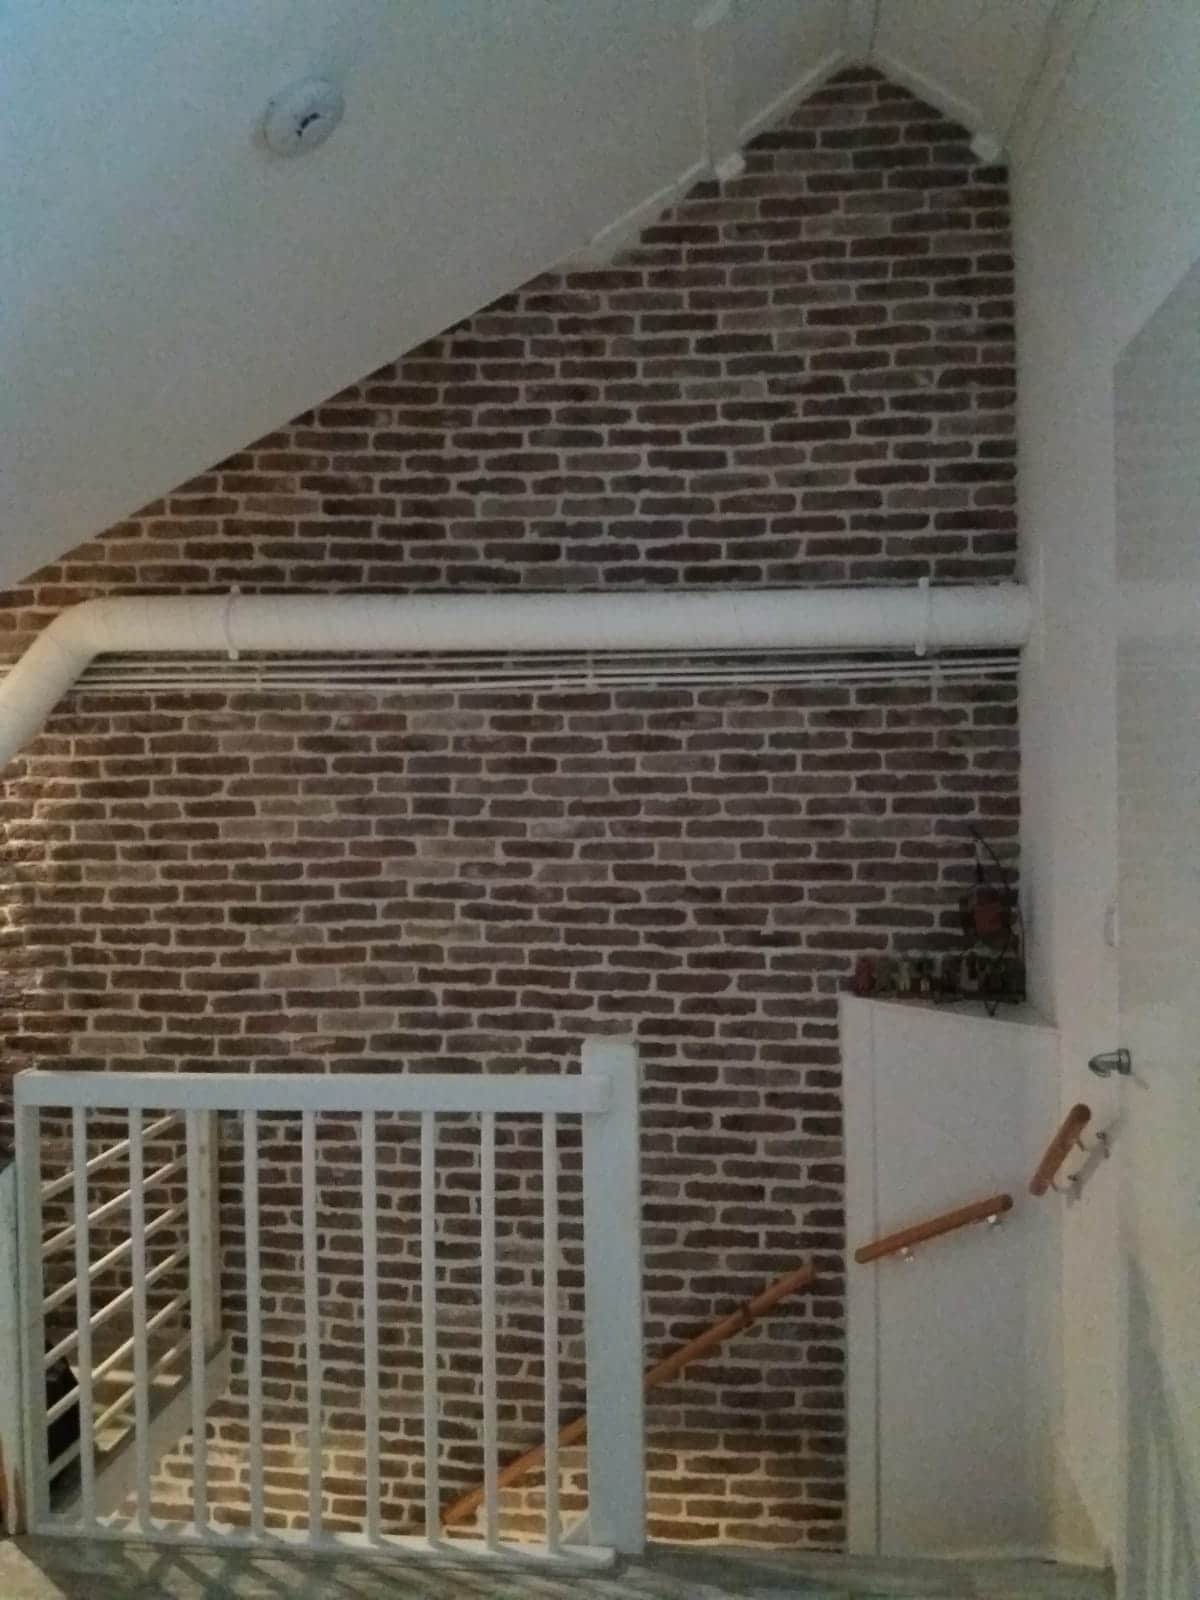 brickwall steenstrips bakstenen muur zolder trap 